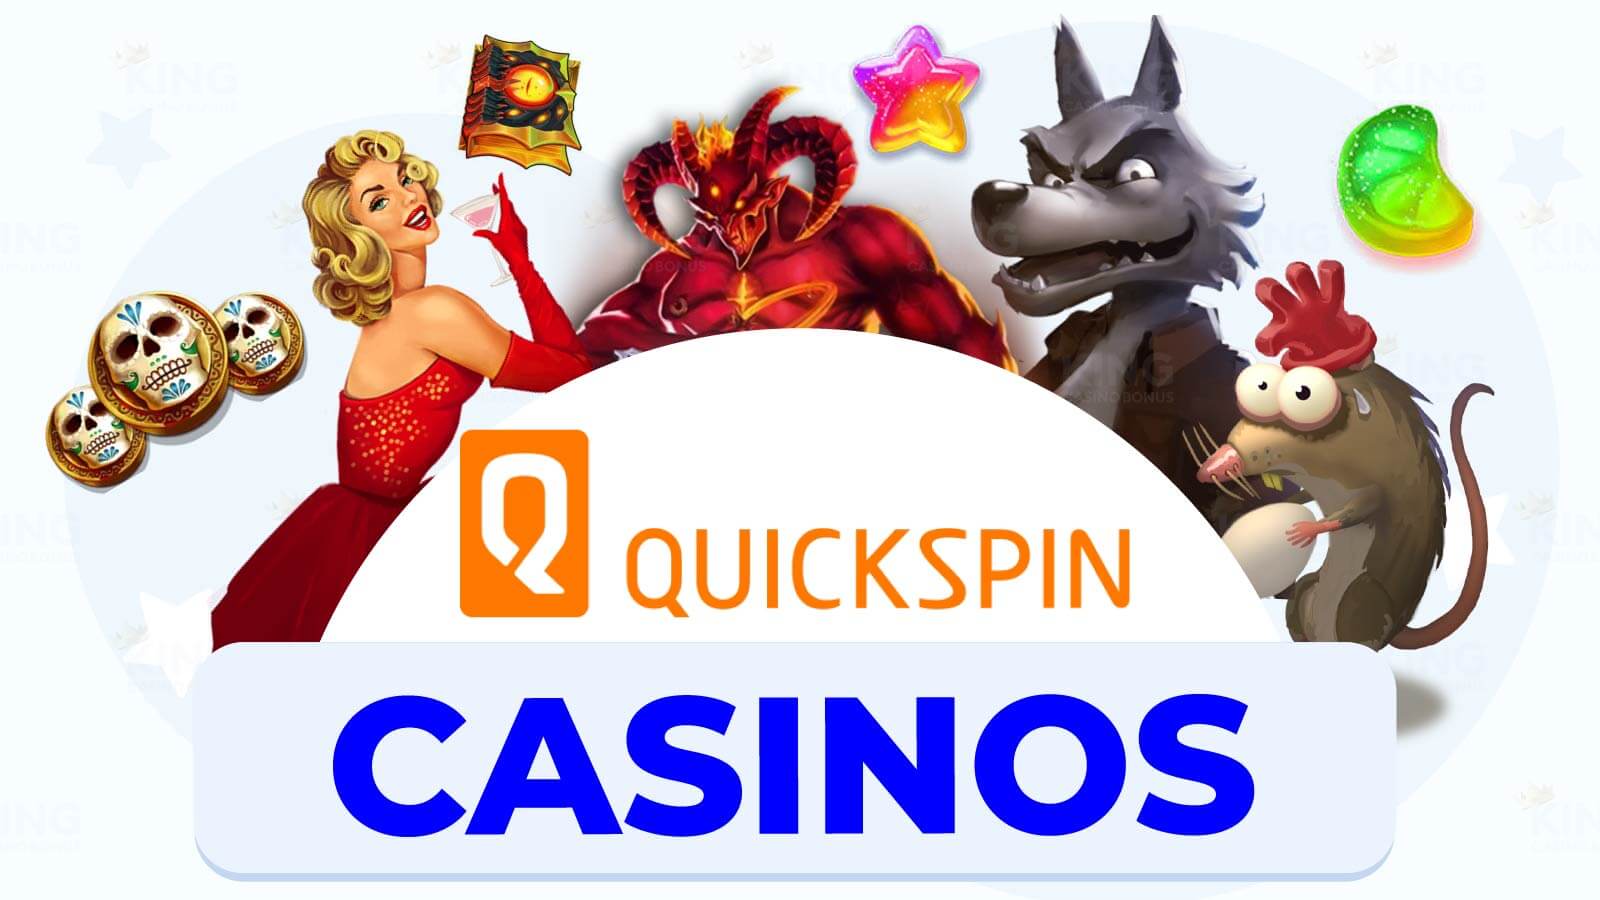 Quickspin Casinos